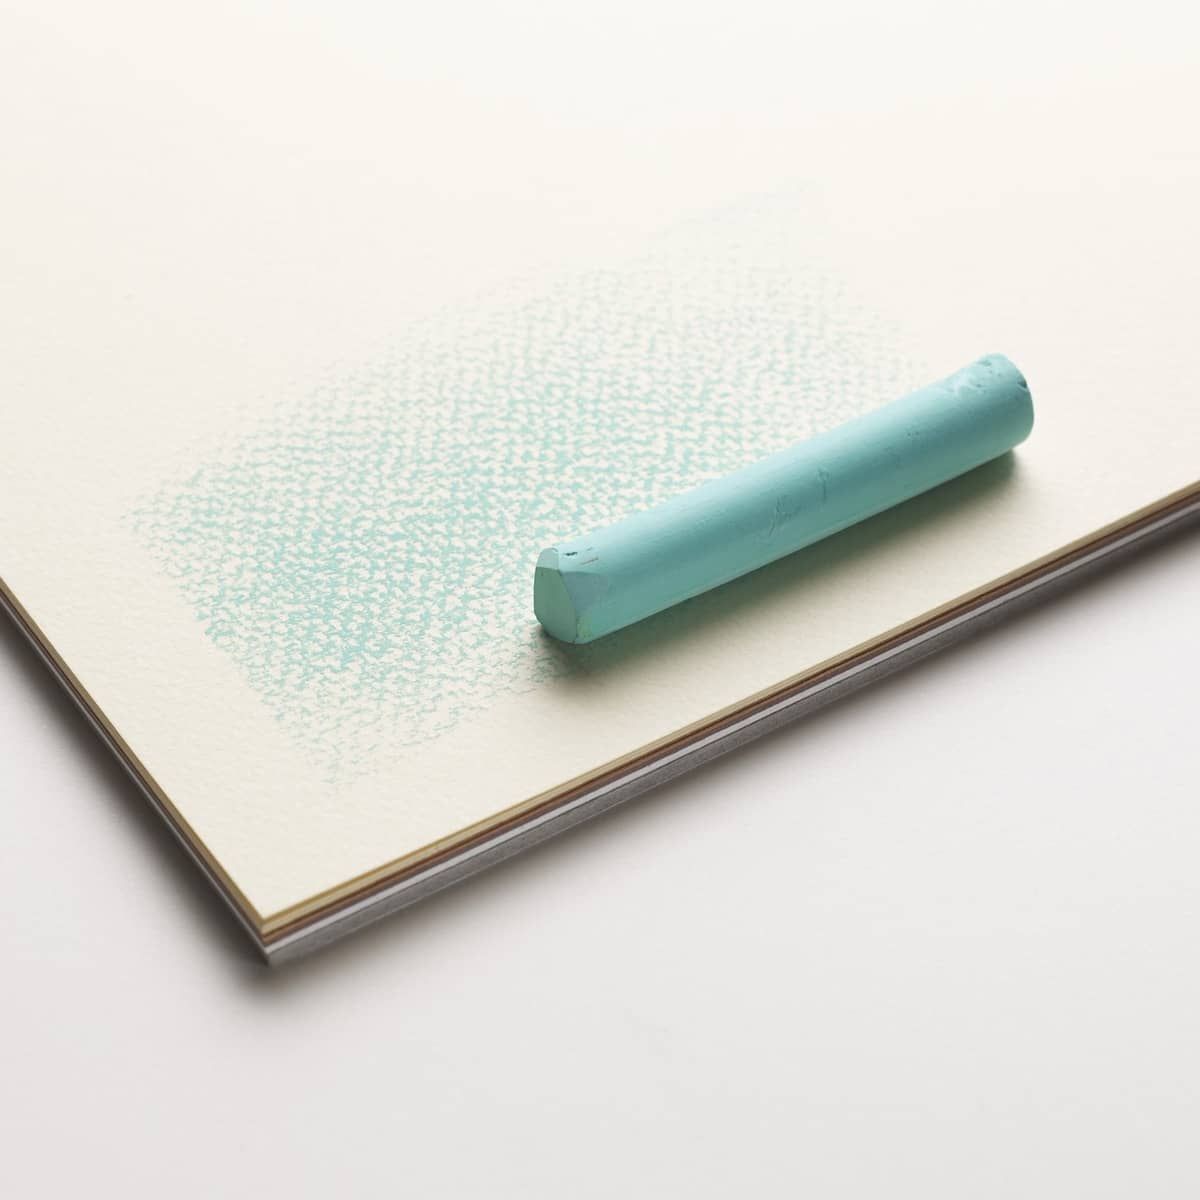 Winsor & Newton Pastel Paper 75 lb 12x16 Pad Earth Colors 24-Sheets